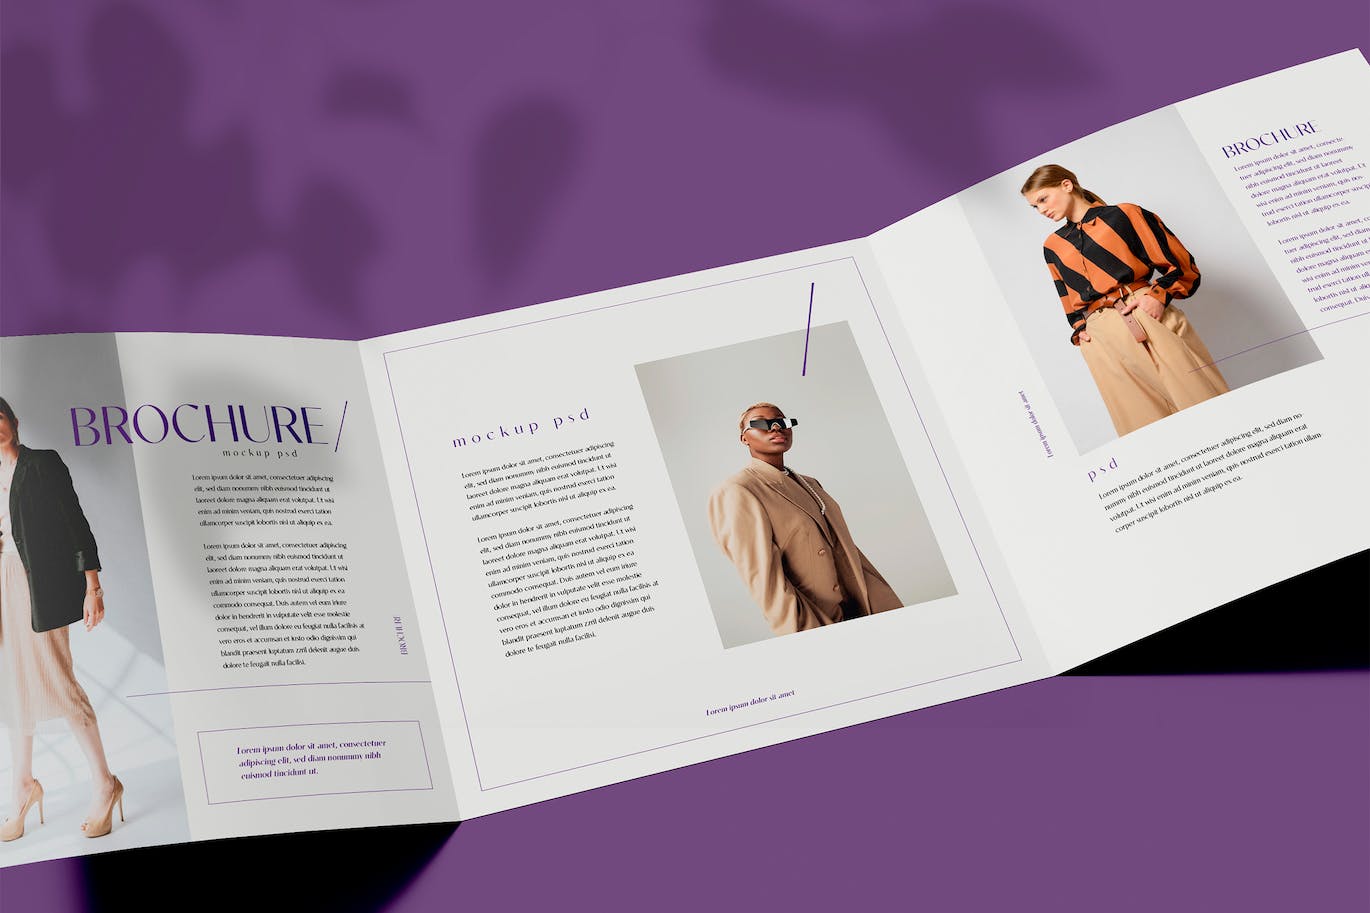 折页时尚杂志宣传册设计样机psd模板v9 Brochure Mockup 样机素材 第1张